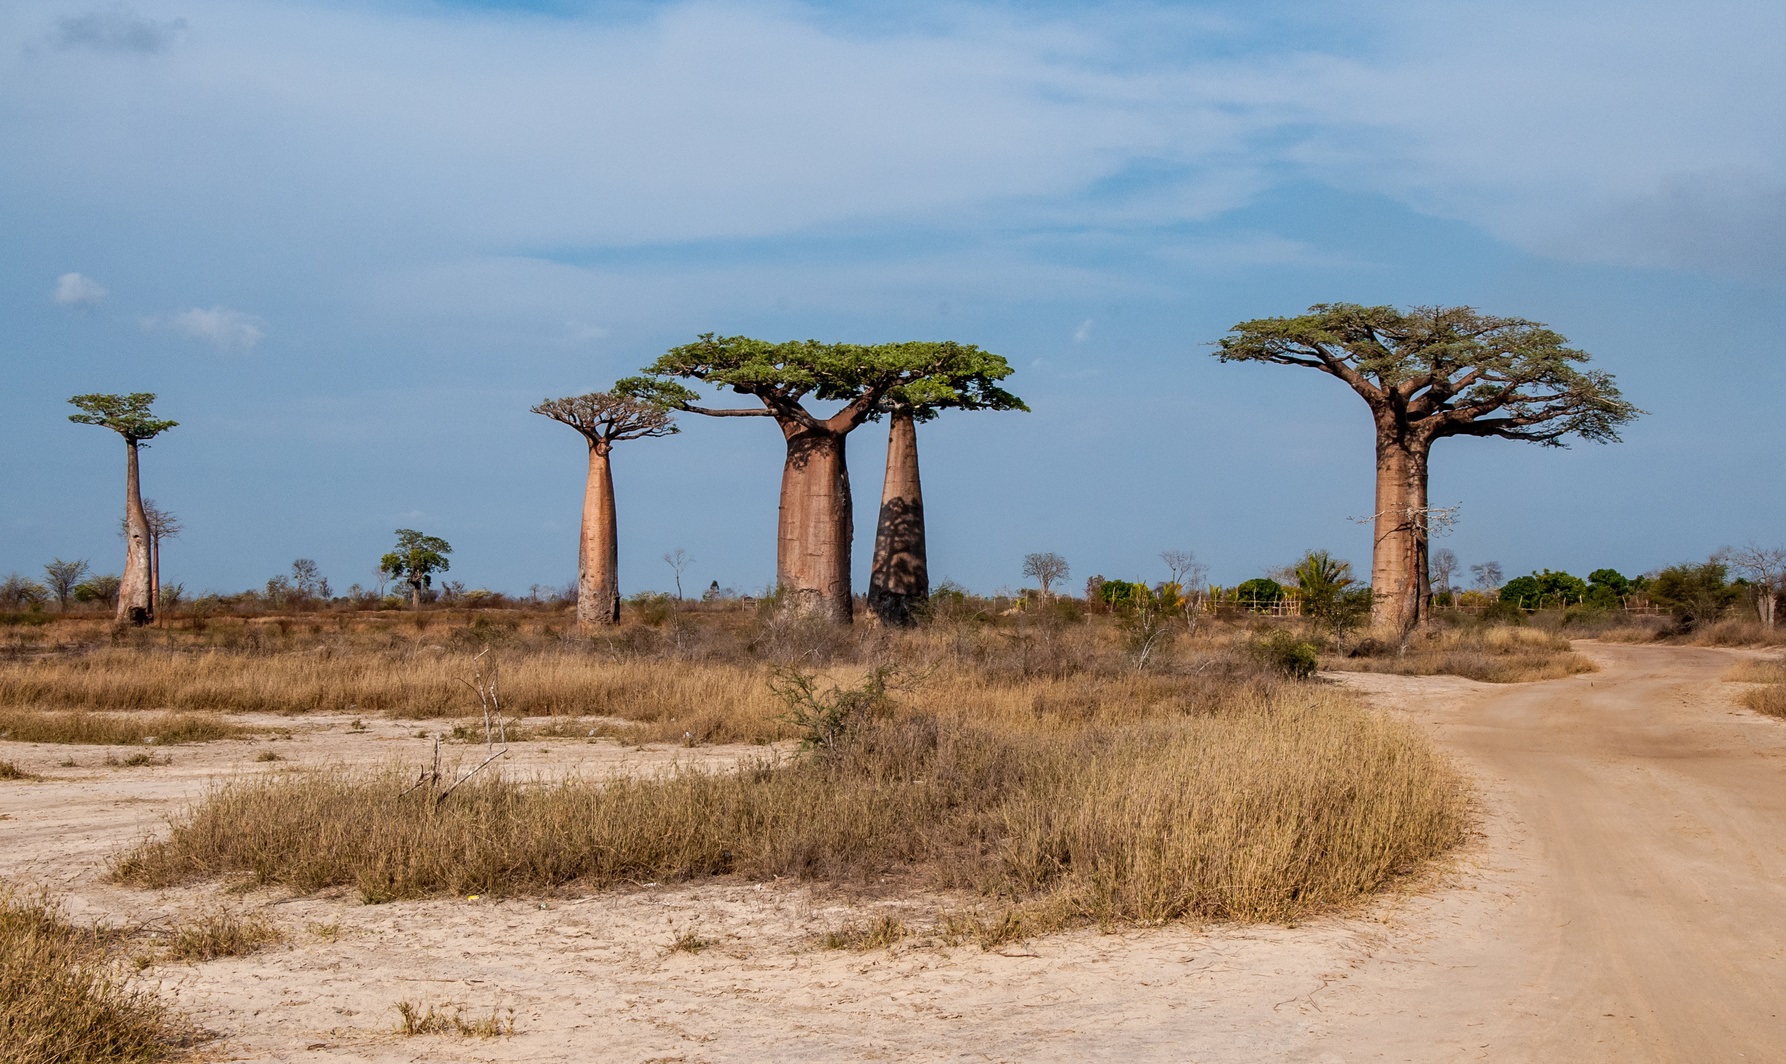 La disparition des baobabs les plus vieux s’est accélérée ces dernières années. © stefanobarze1, Fotolia